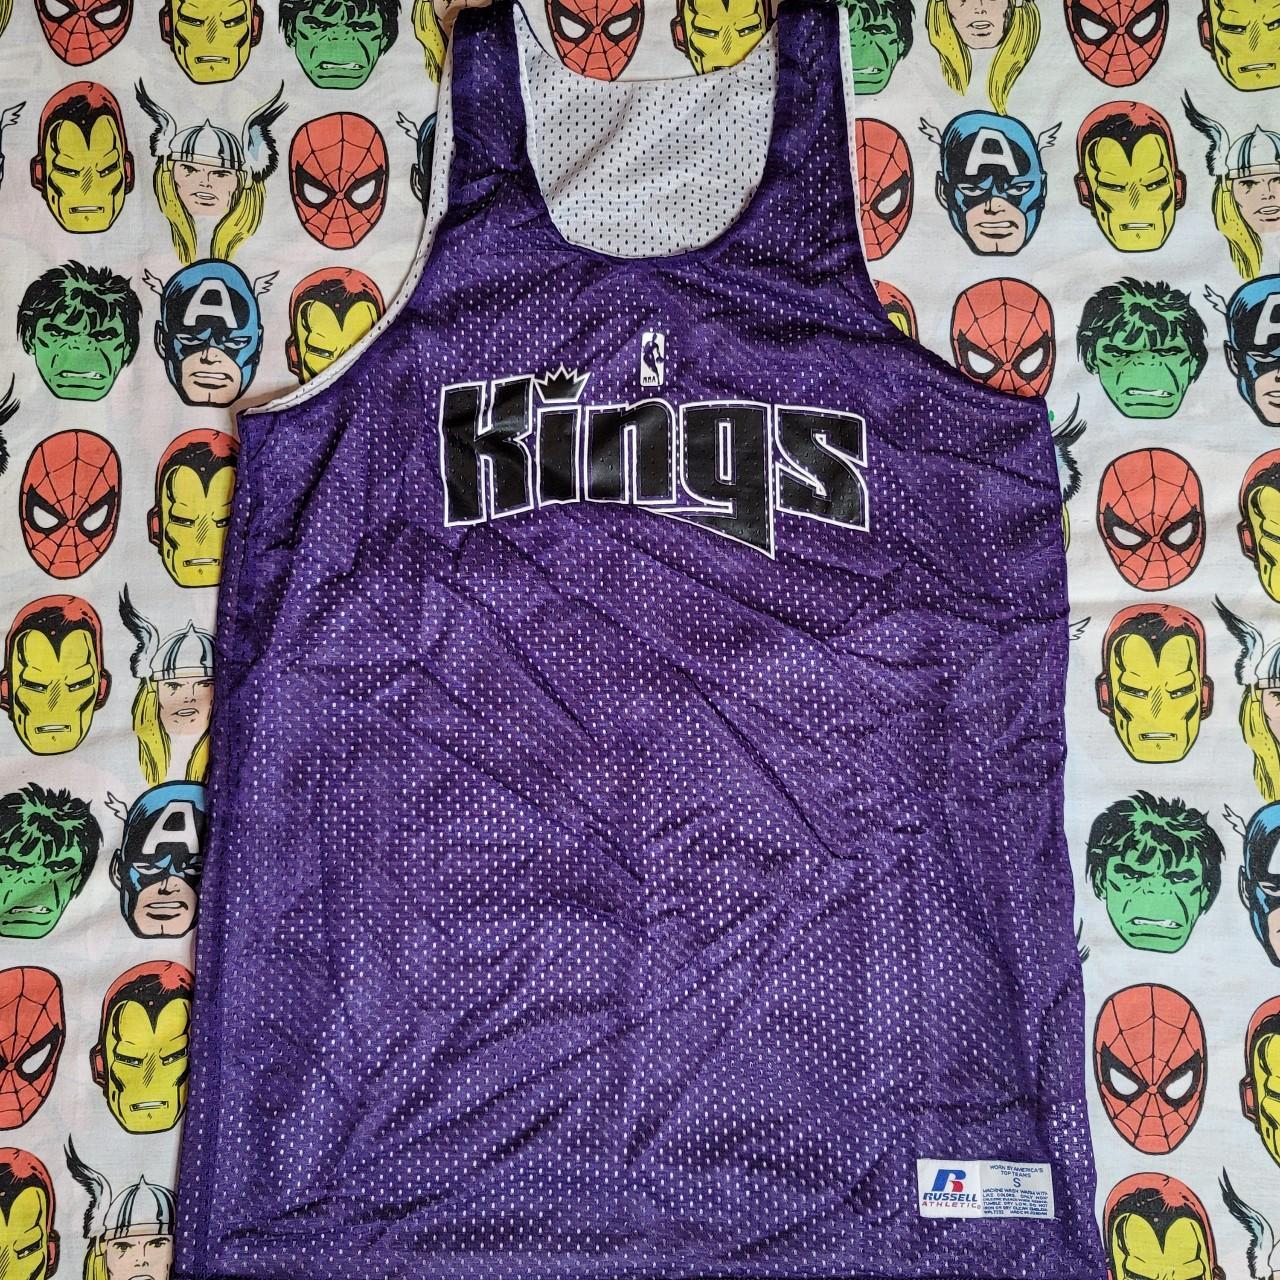 kings basketball shirt